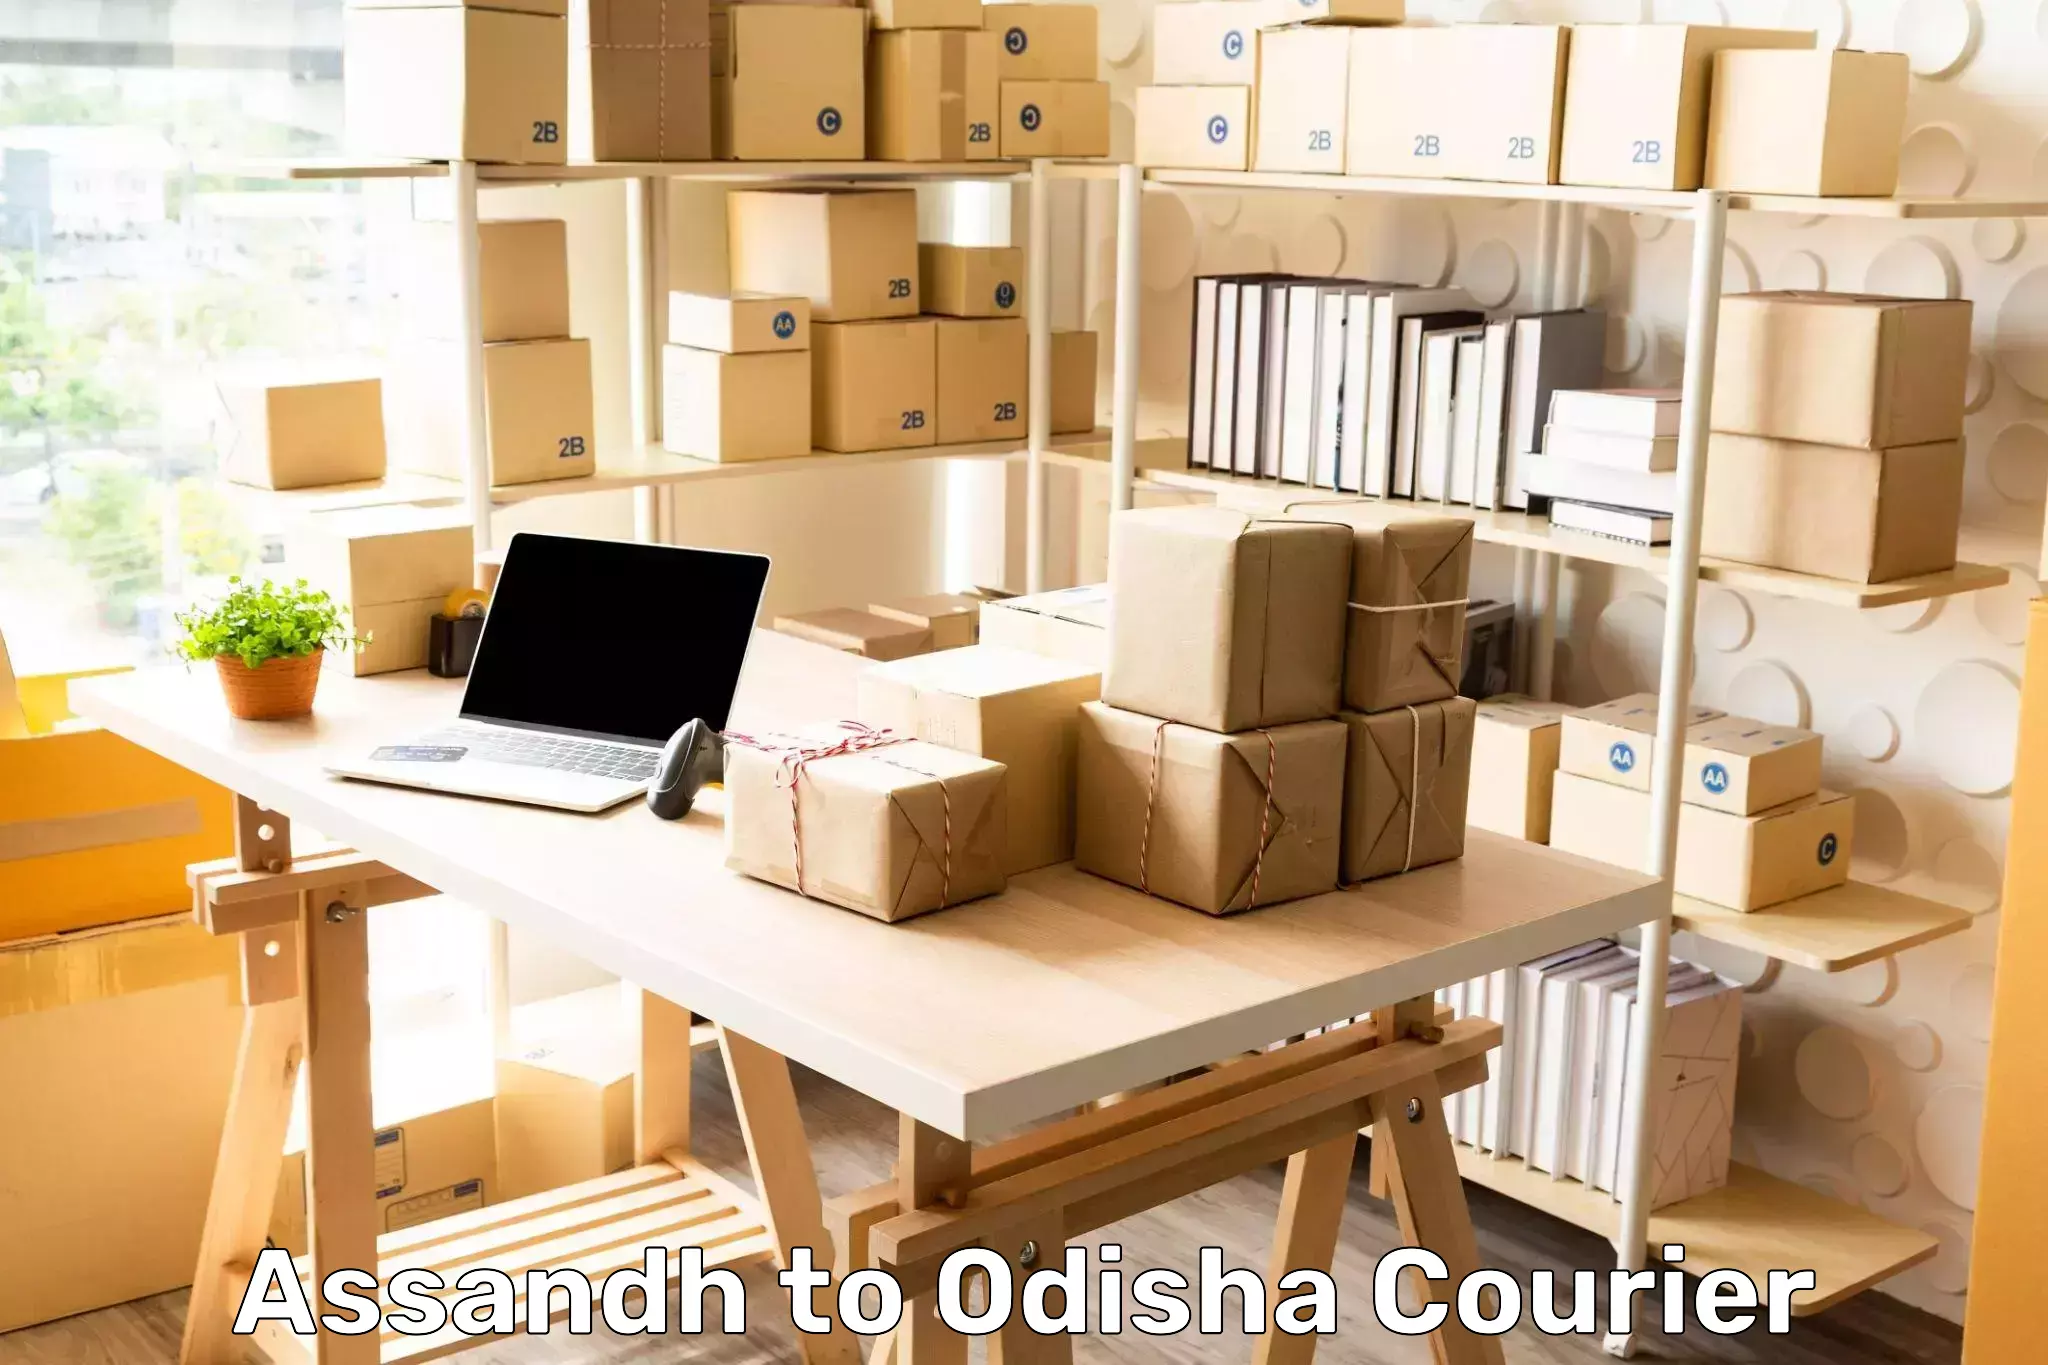 Logistics service provider Assandh to Odisha